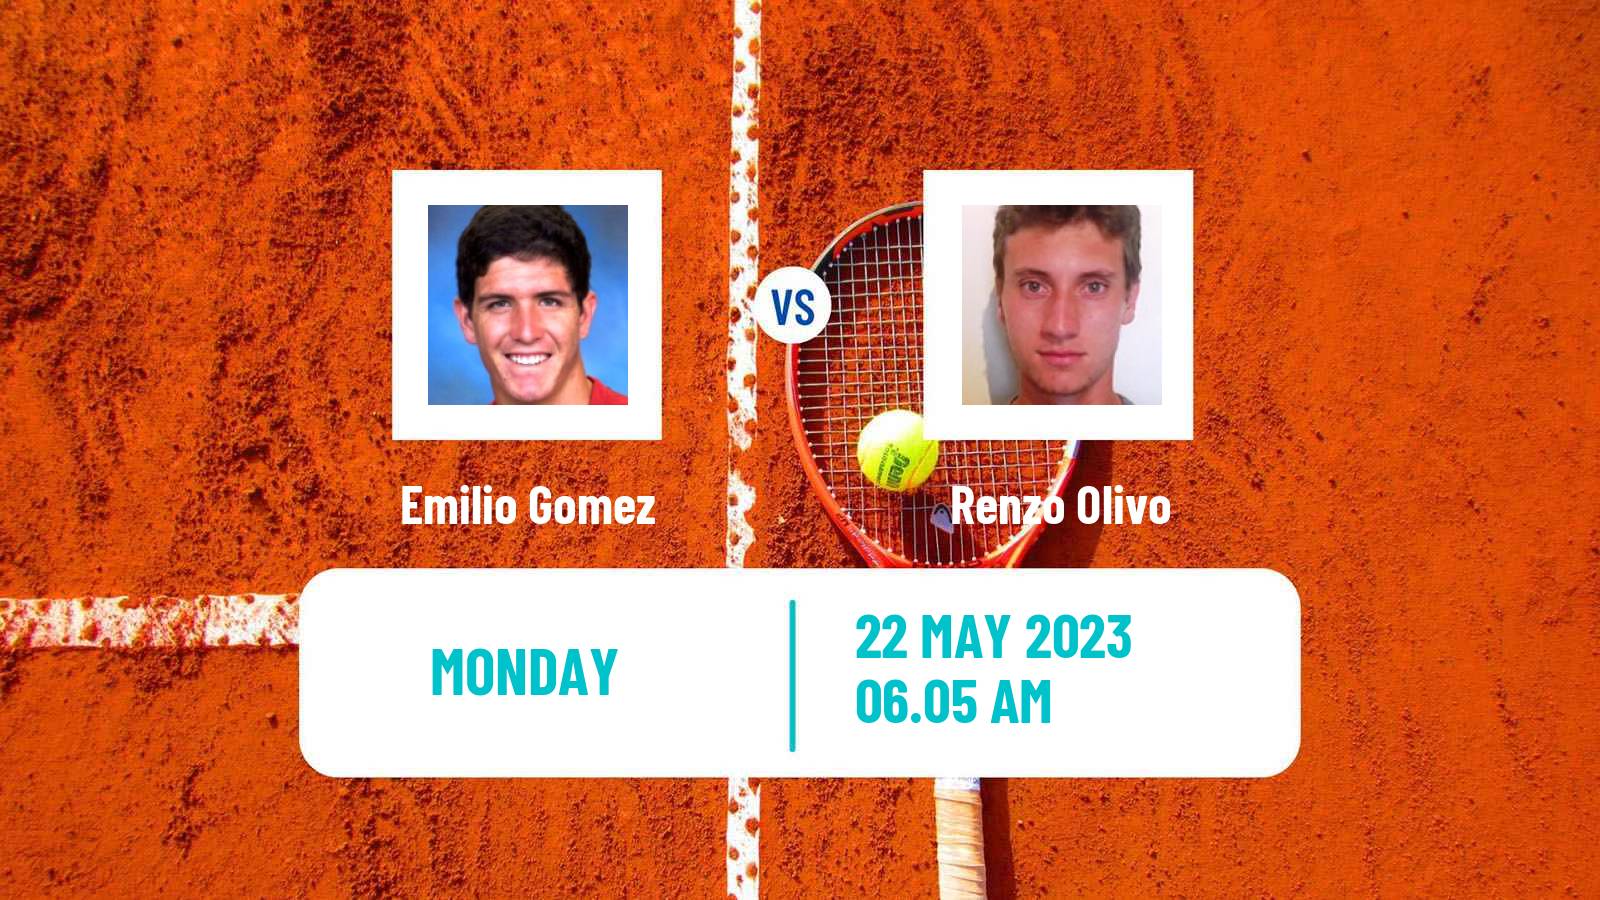 Tennis ATP Roland Garros Emilio Gomez - Renzo Olivo